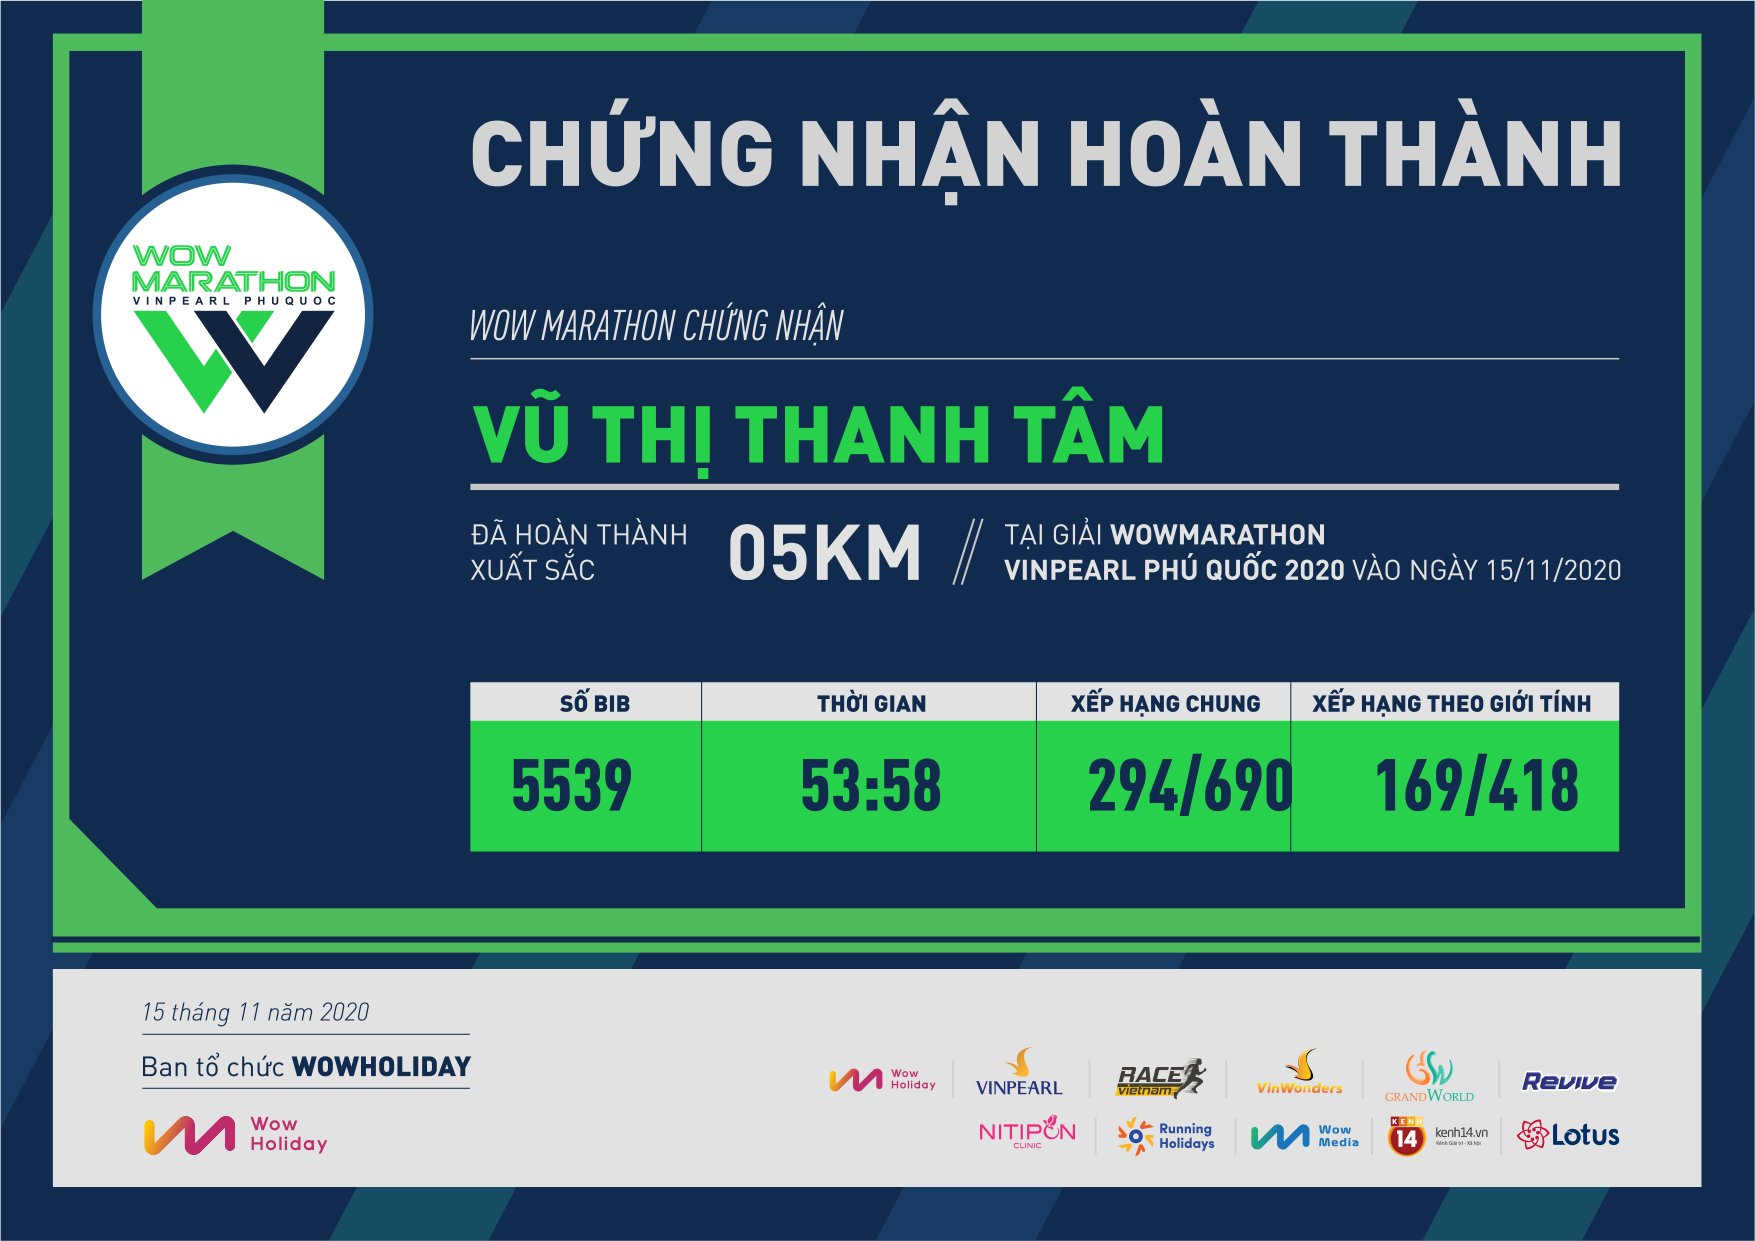 5539 - Vũ Thị Thanh Tâm